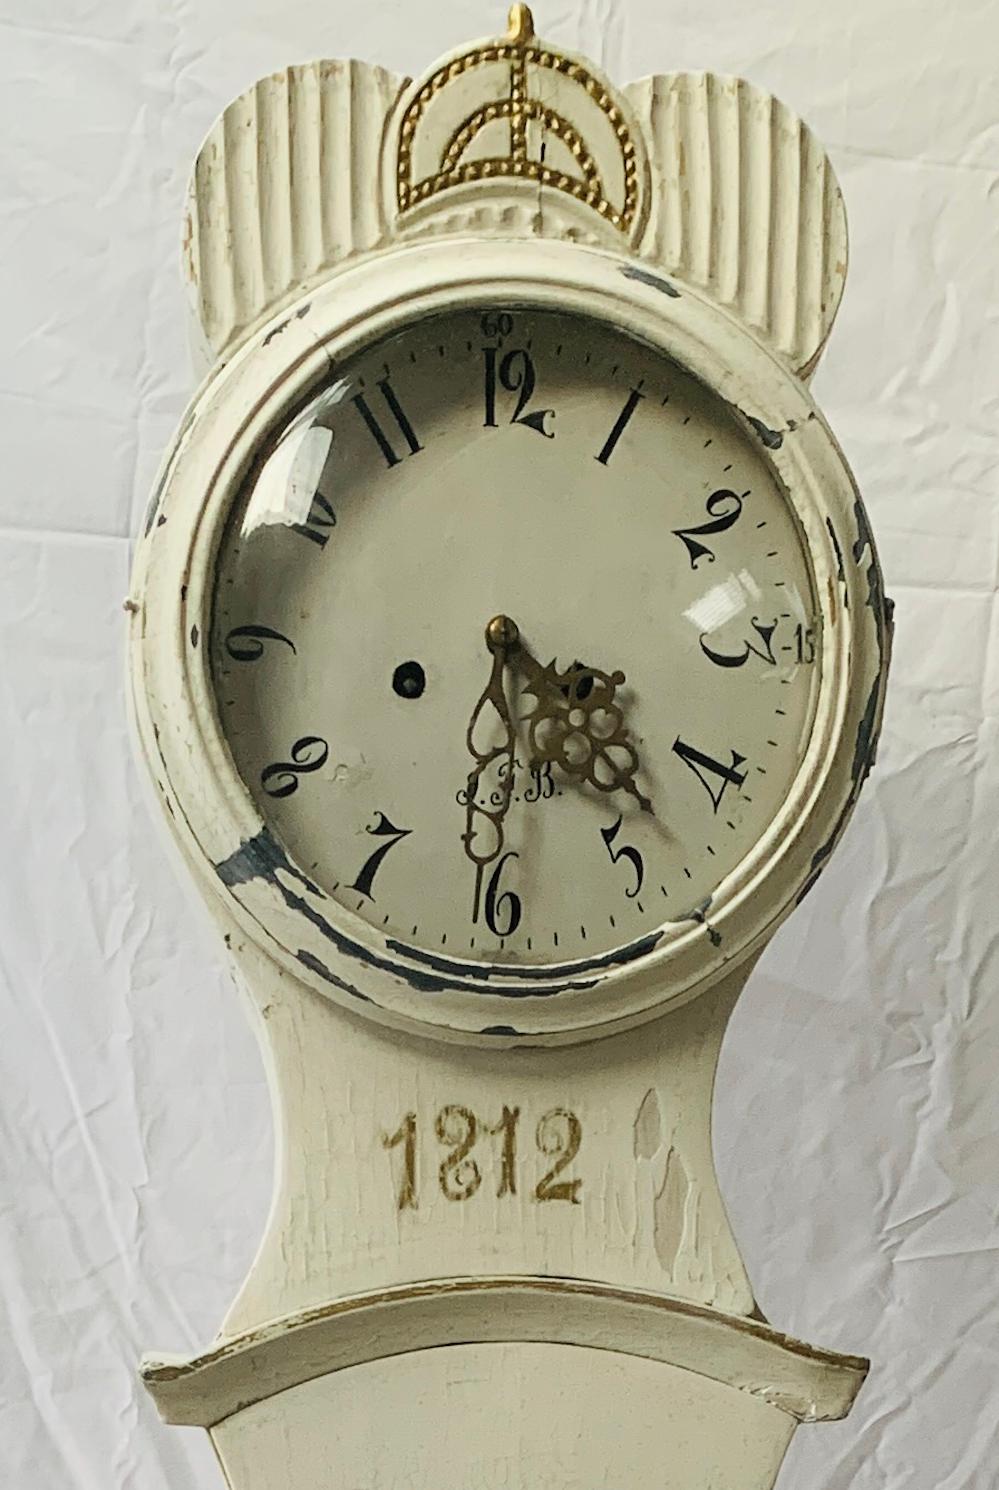 Horloge mora suédoise du début des années 1800 en peinture blanche avec des détails sculptés d'inspiration classique Fryksdal sur le corps et le capot. Cette horloge mora de grand-père est extrêmement inhabituelle par sa décoration et ses détails